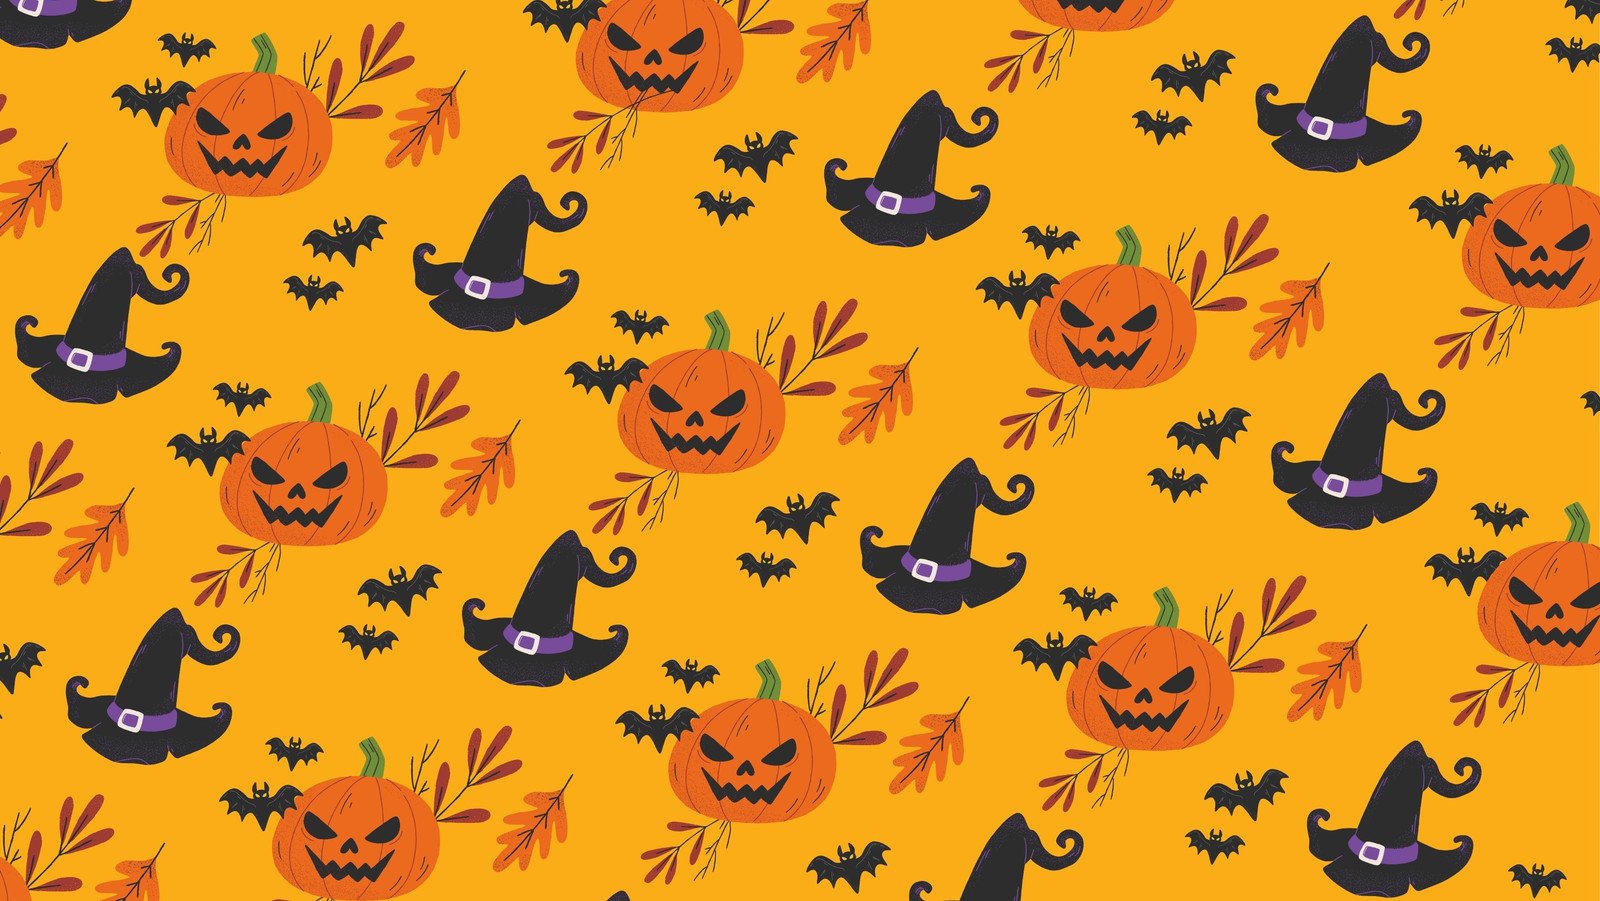 Plantillas de portadas de Halloween para Facebook | Canva